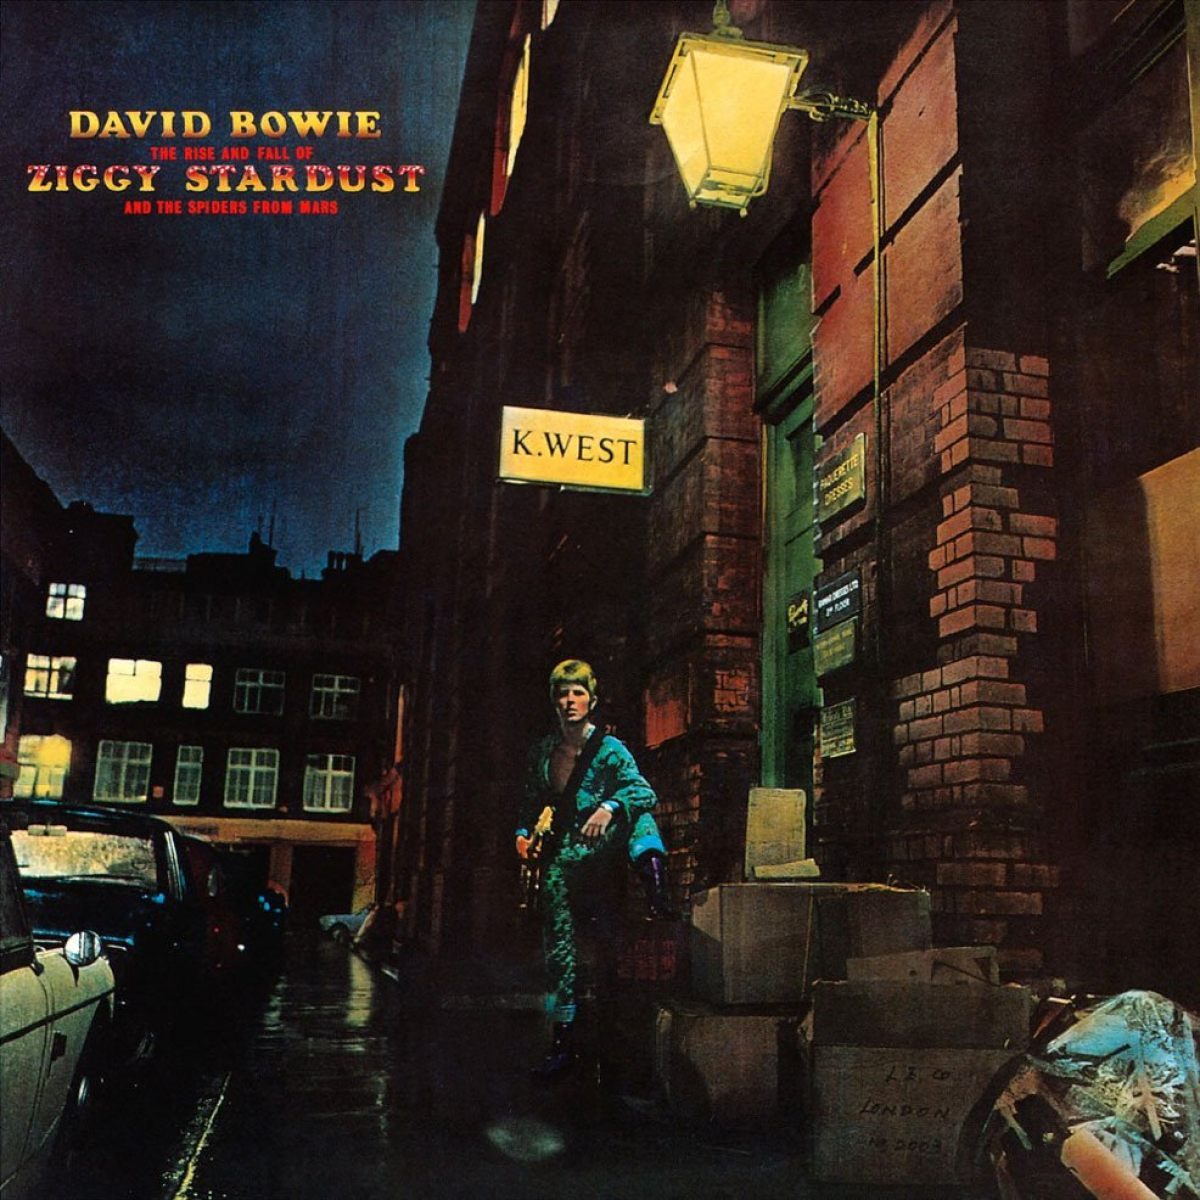 David Bowie, Ziggy Stardust, album, music, 1970s